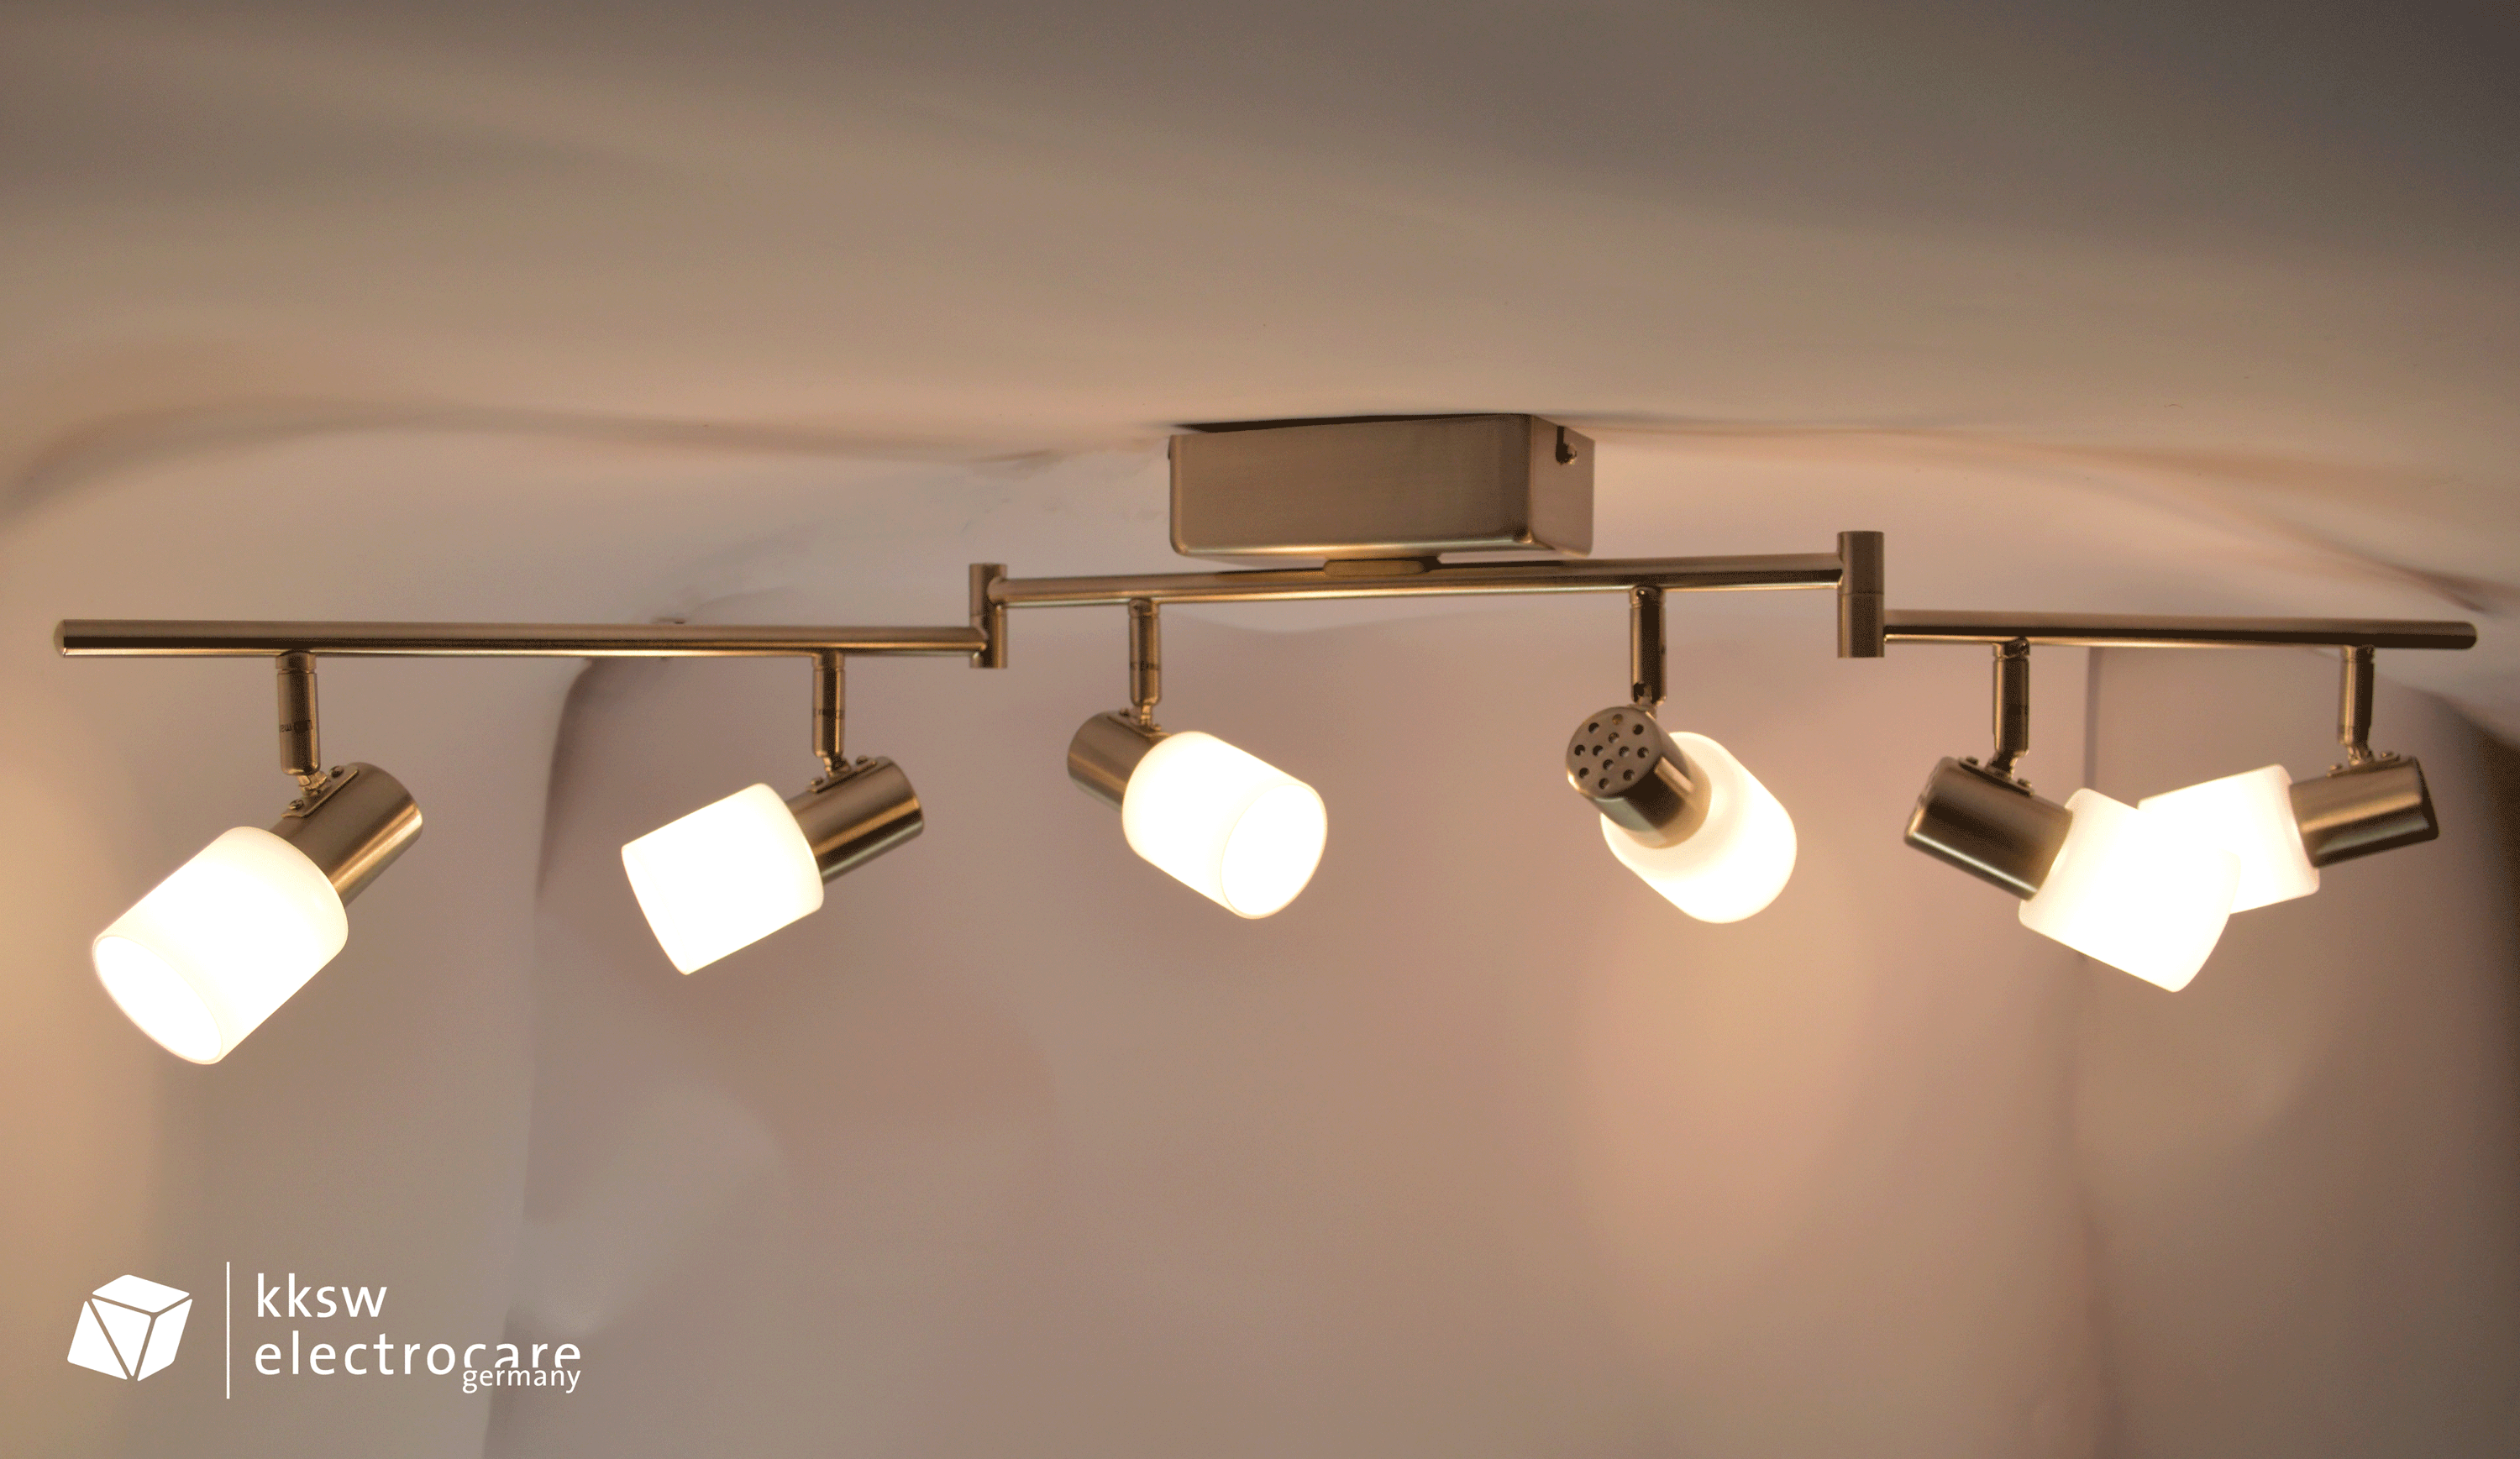 LED Spot Lampe Deckenleuchte, nickel- matt, satin, weiß modern, 6- flammig,  Metall/ Glas, Eglo 31393 Taberno | KKSW electrocare